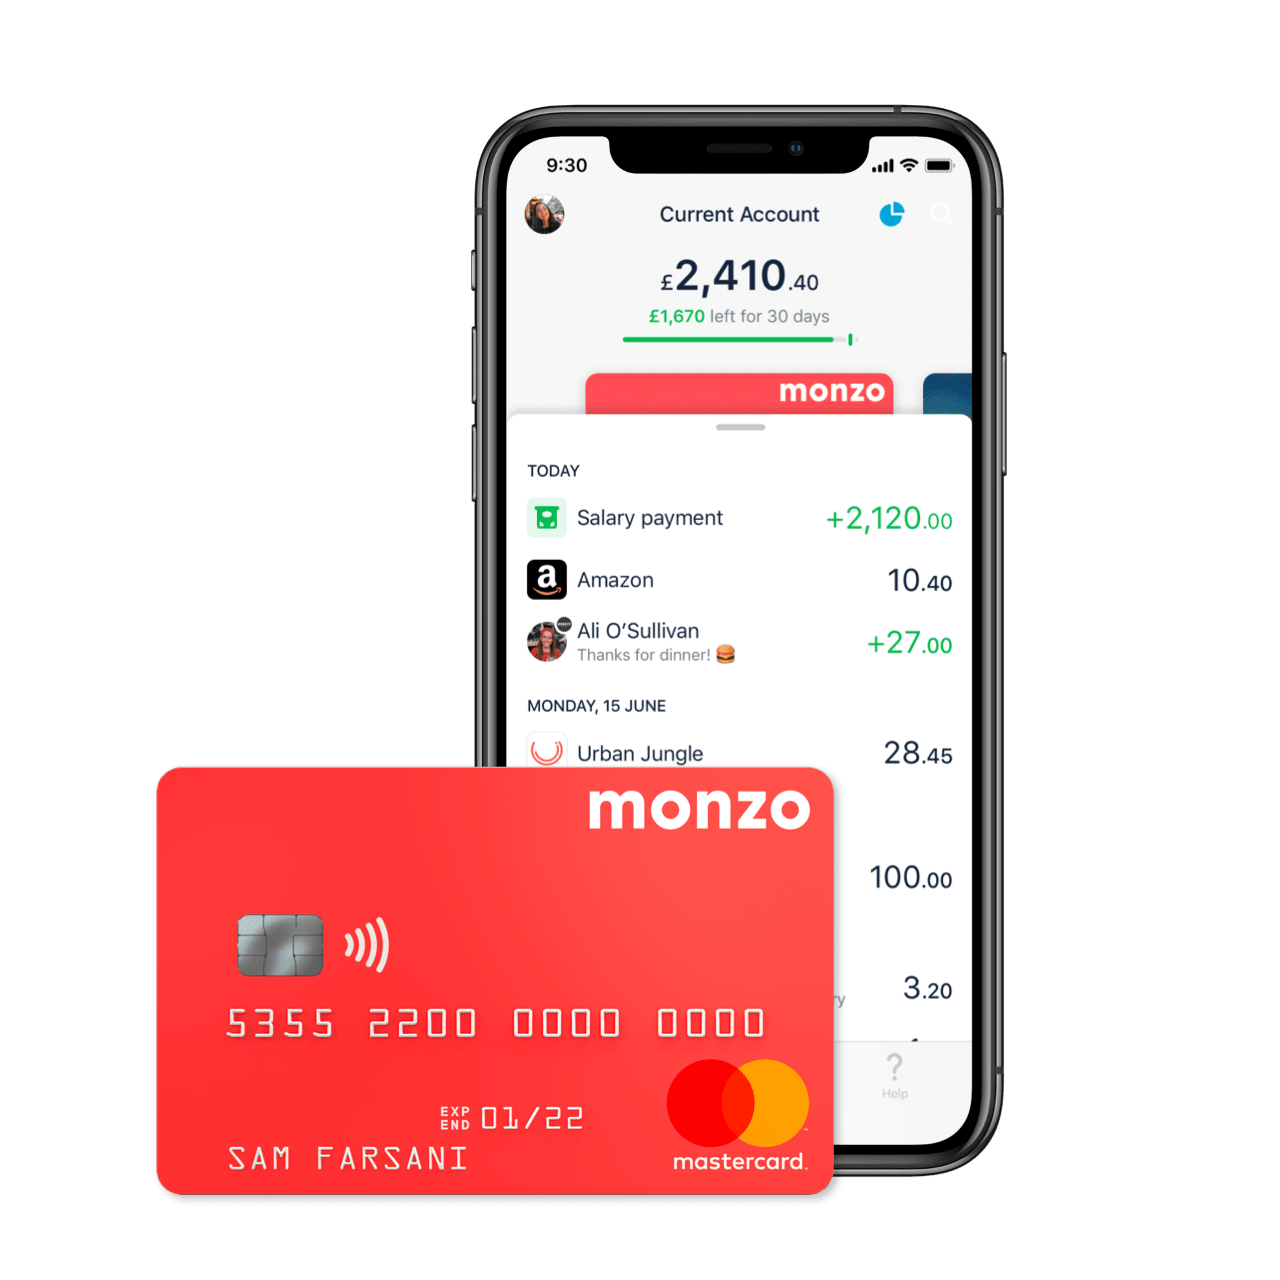 monzo bank